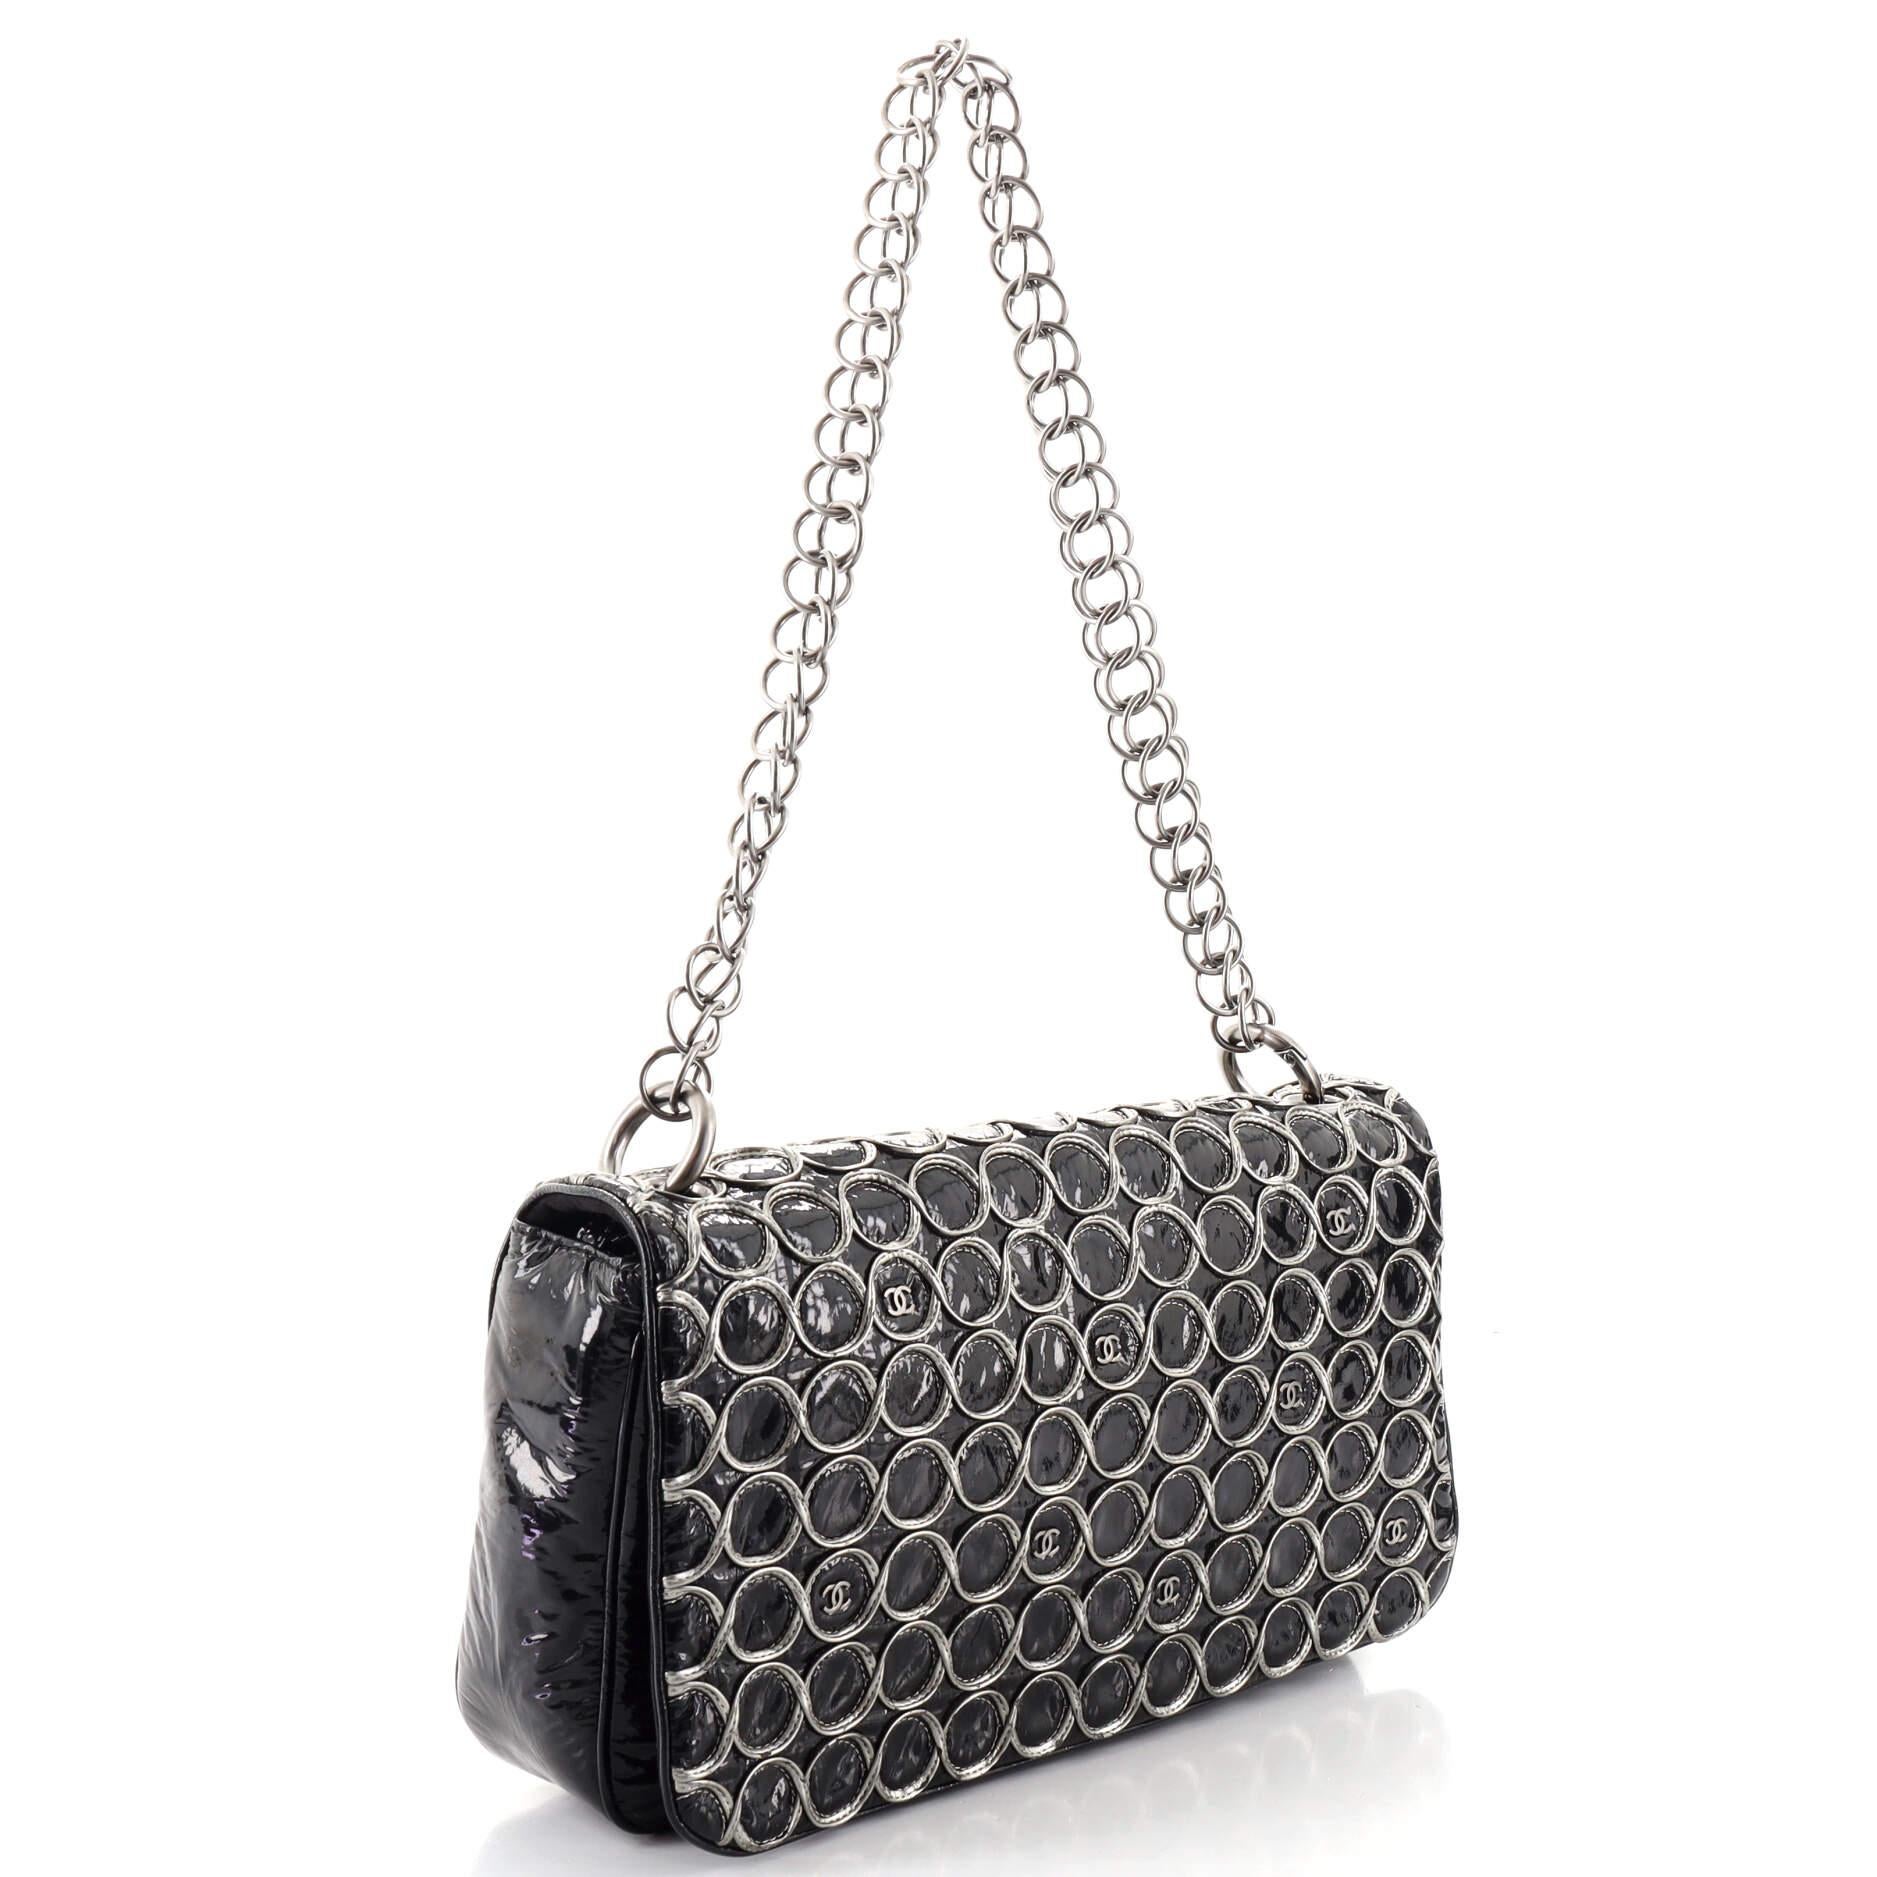 Black Chanel Bubble Cube Flap Bag Patent Large